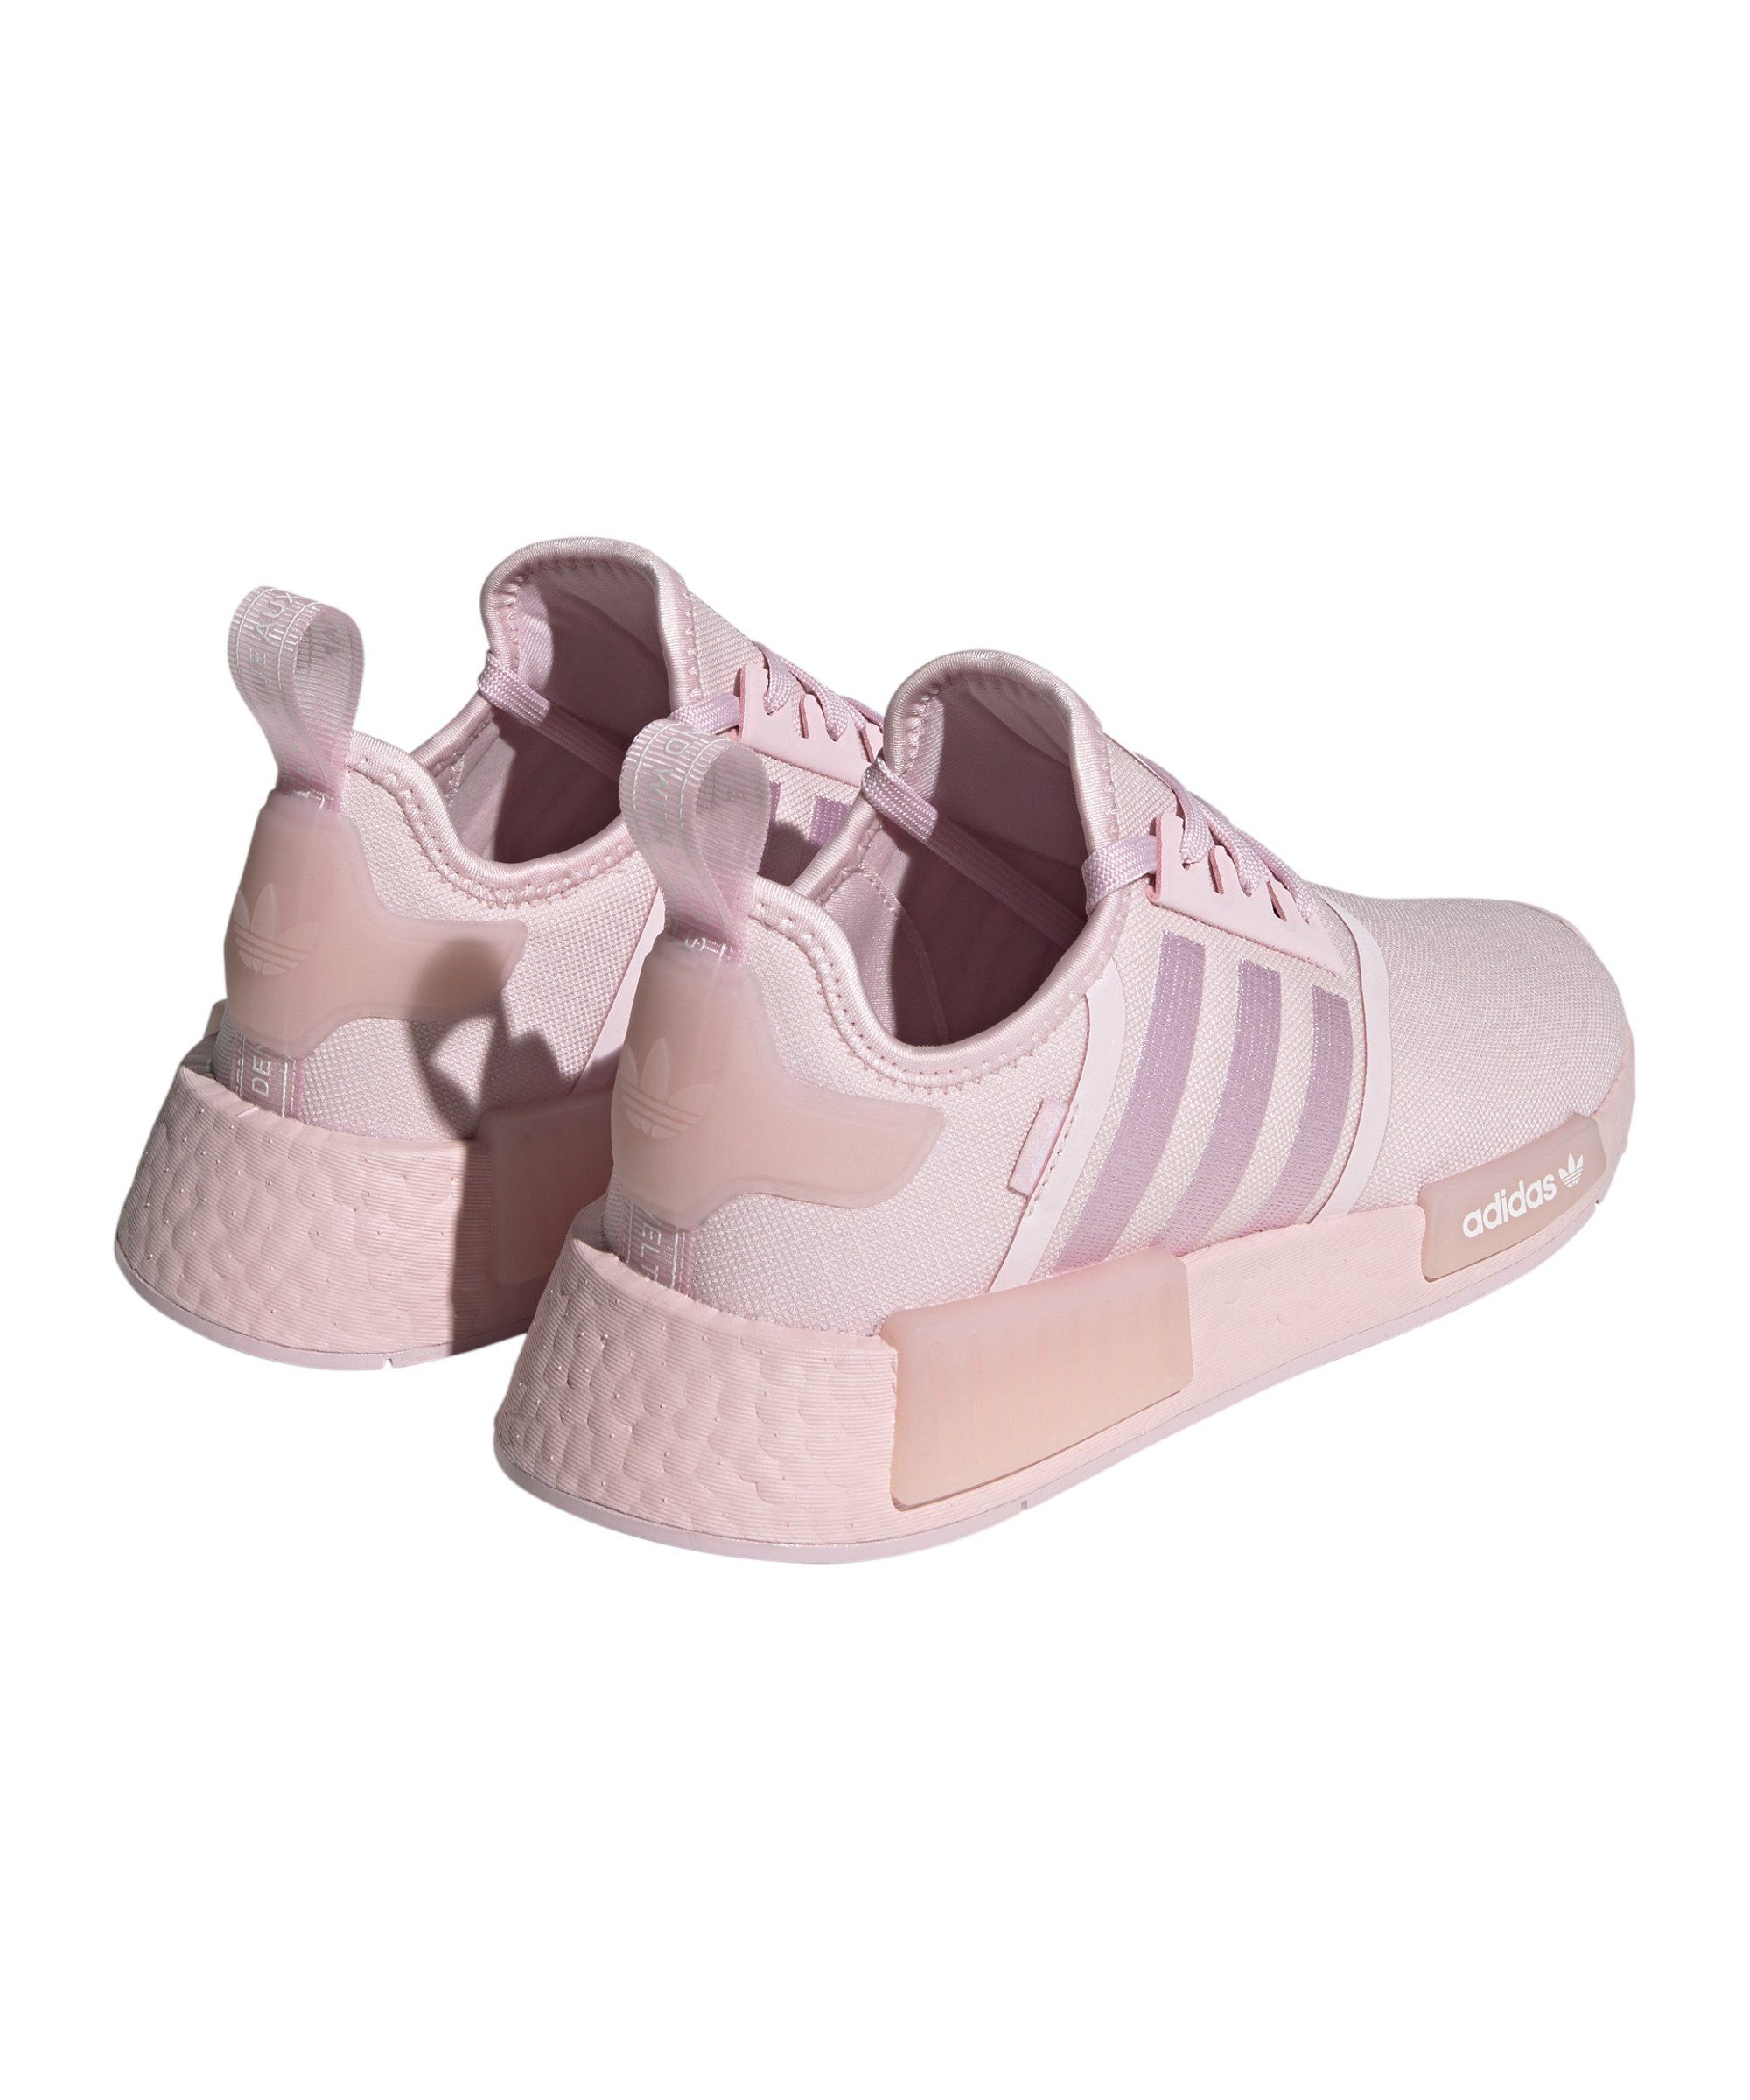 adidas Originals NMD_R1 Damen Sneaker pinkweiss